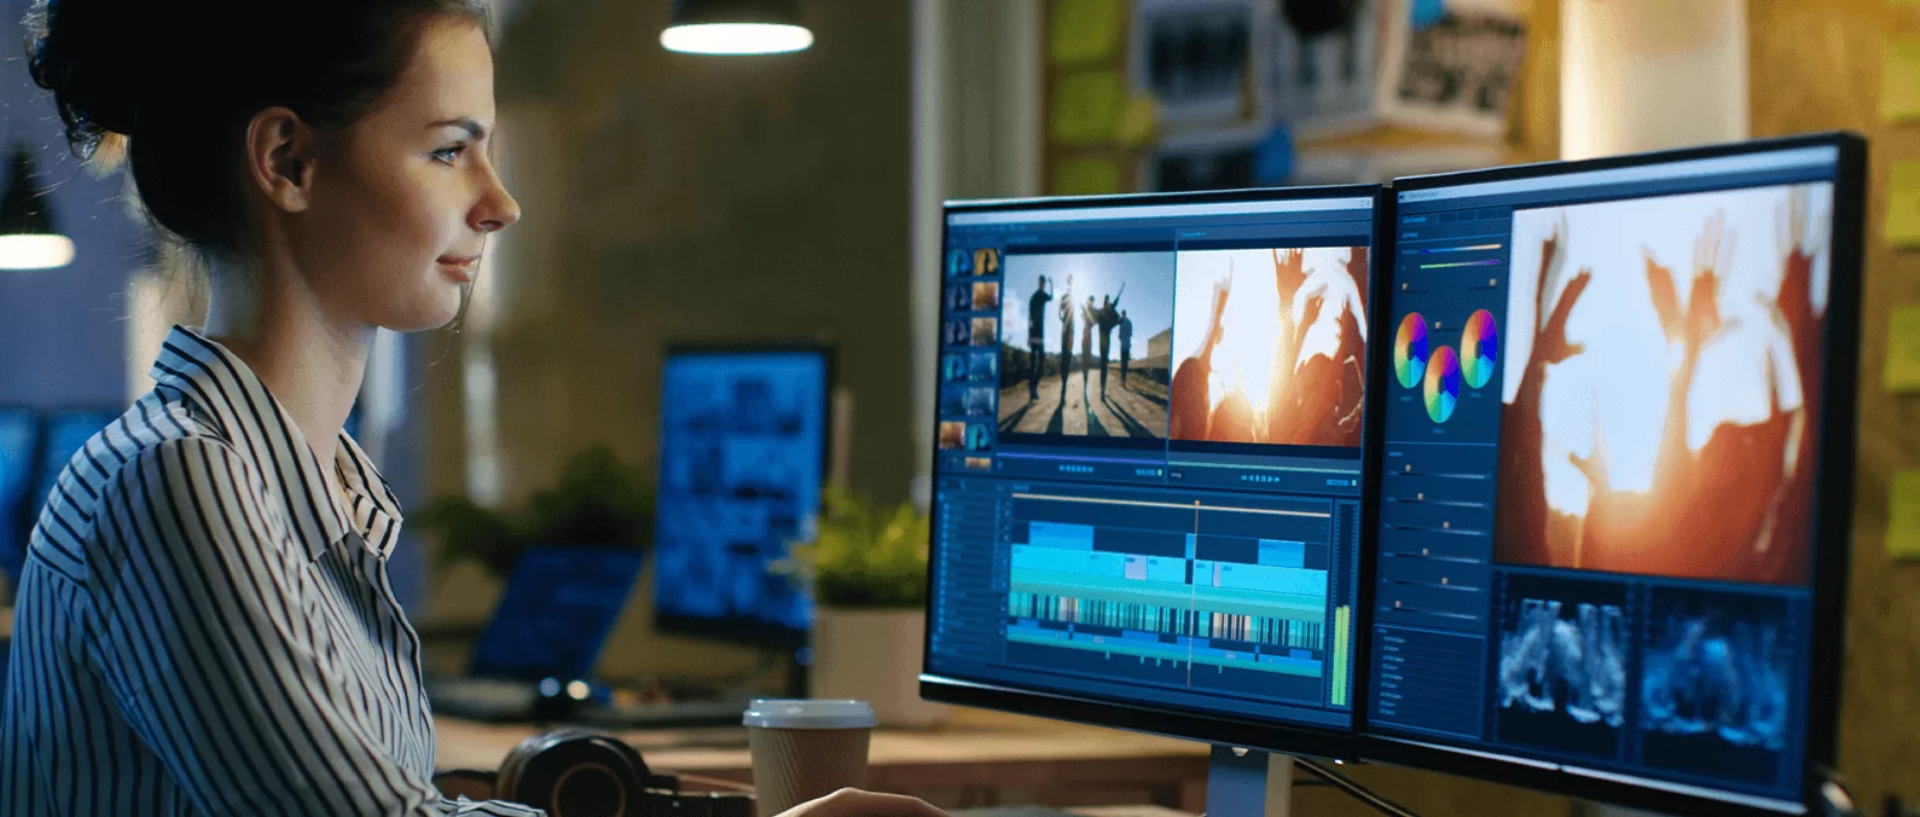 Szkolenie Adobe Premiere Pro – moduł I: Montaż filmowy